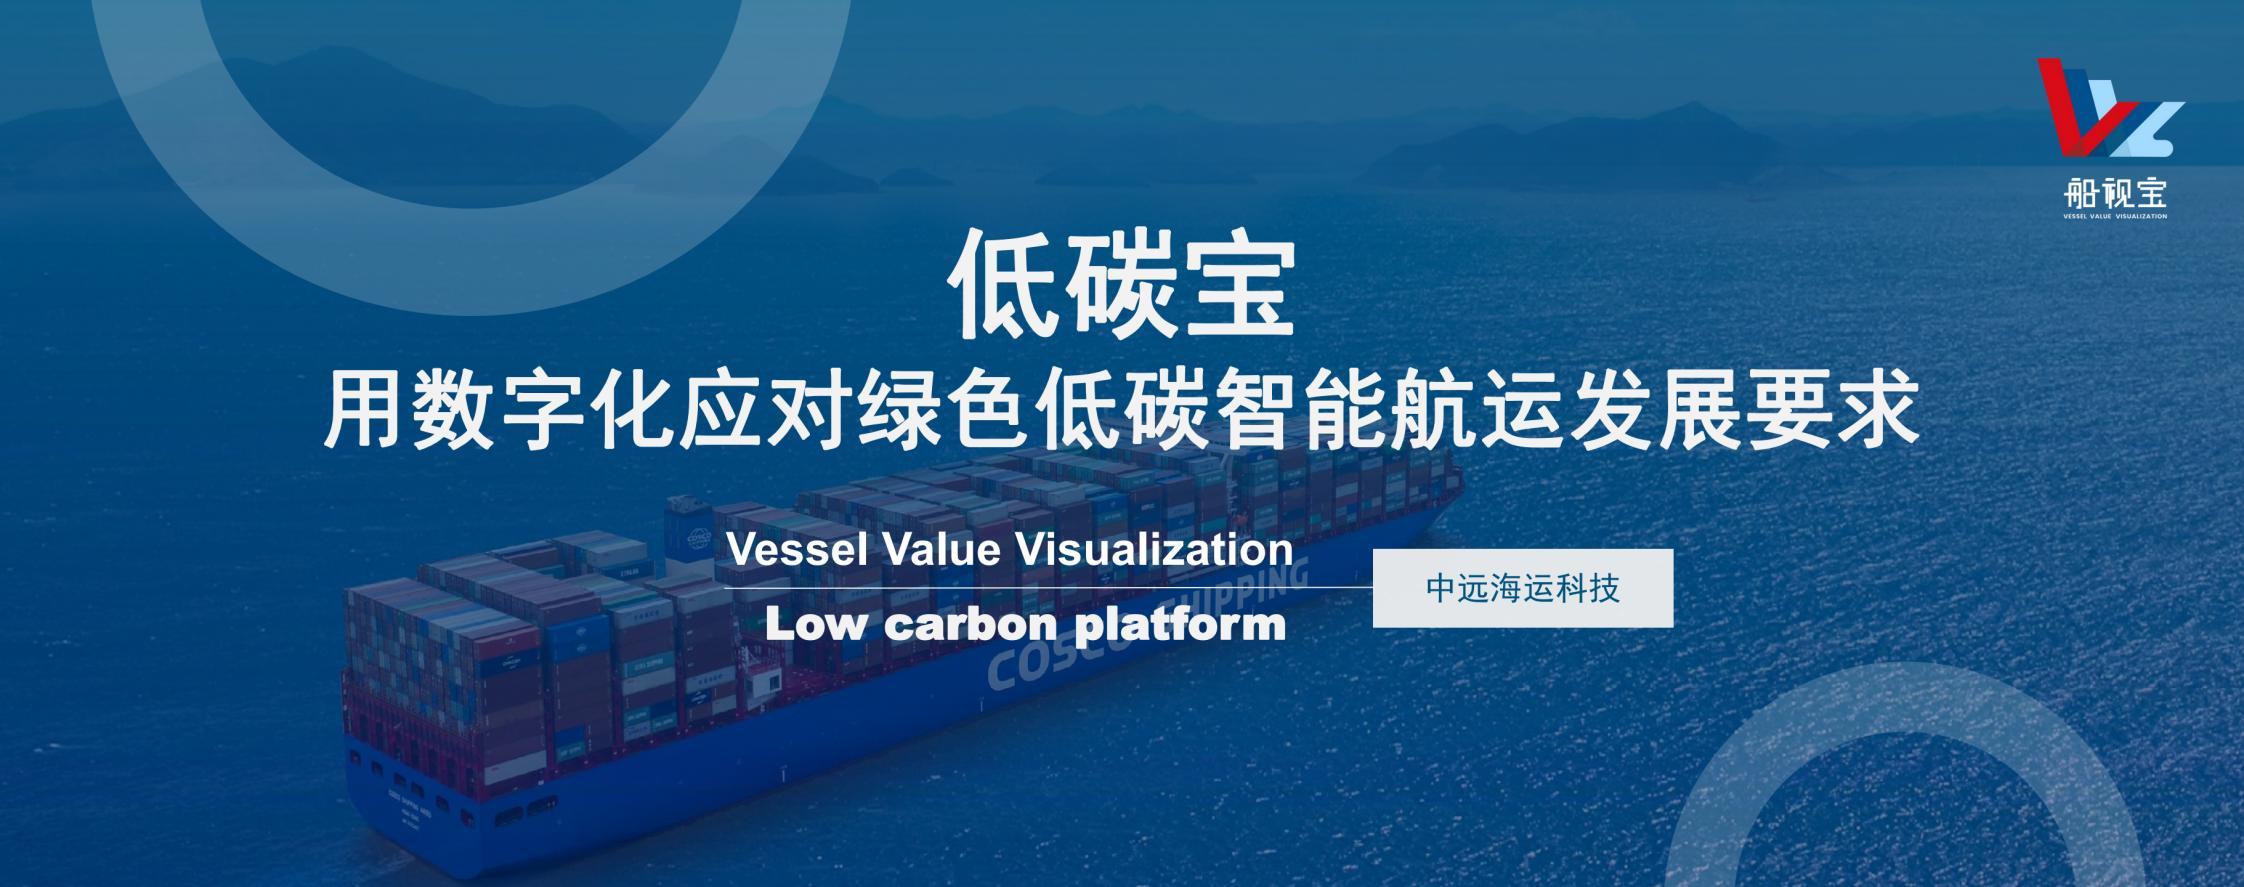 中远海运韩懿-低碳宝 用数字化应对绿色低碳智能航运发展要求